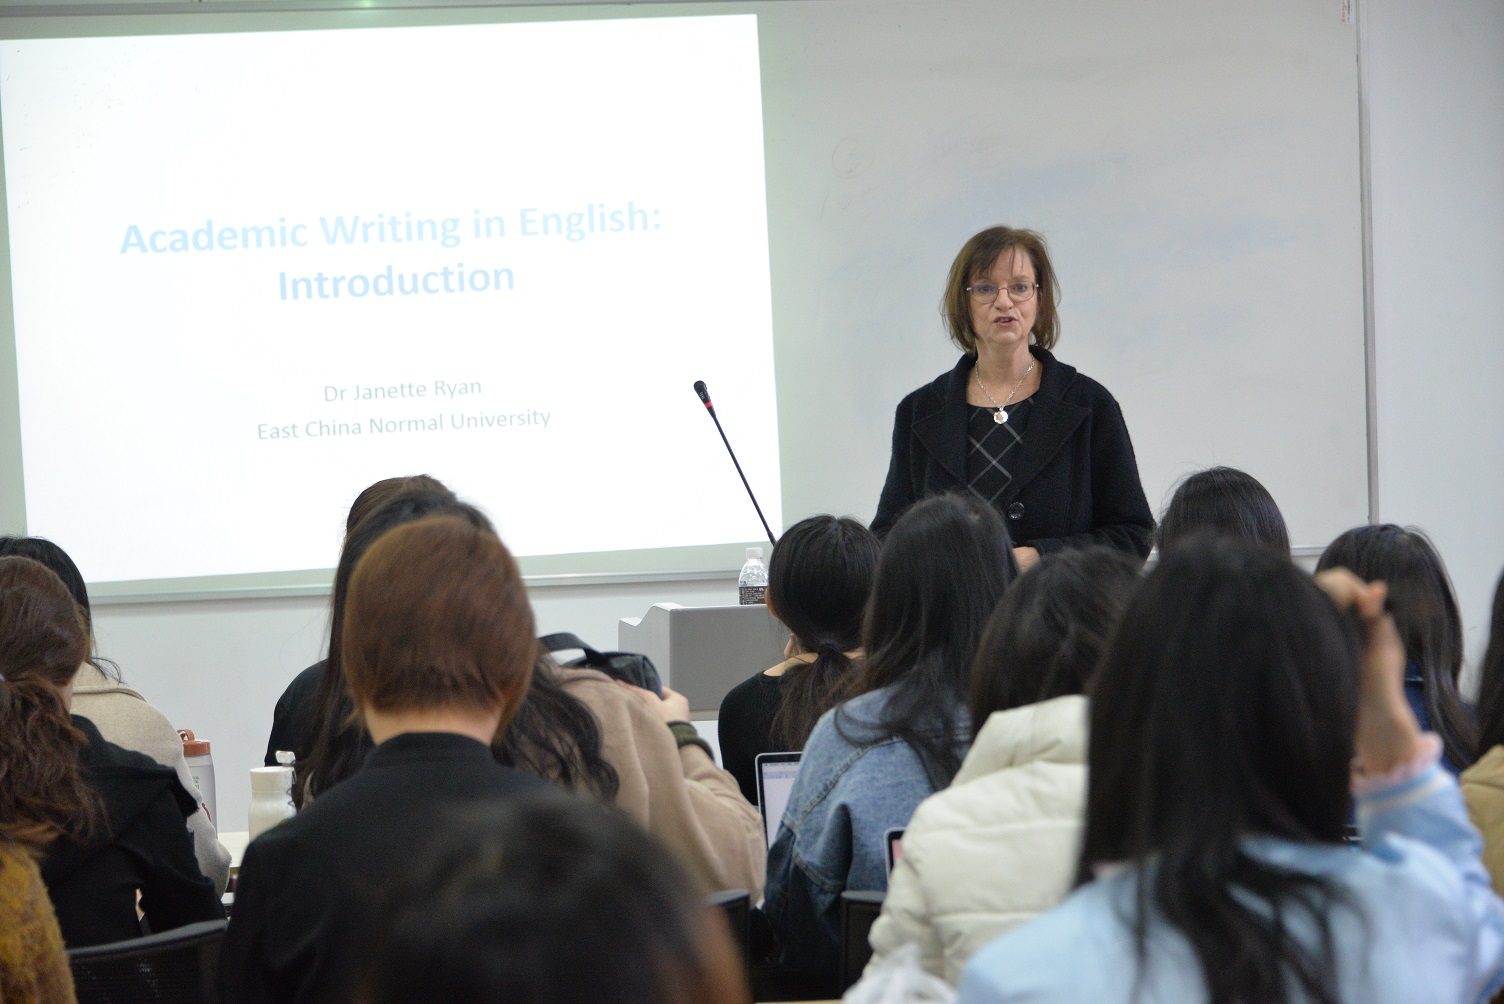 佛年计划∣教育学部2018级佛年班全英语课程之“Academic Writing in English”开讲